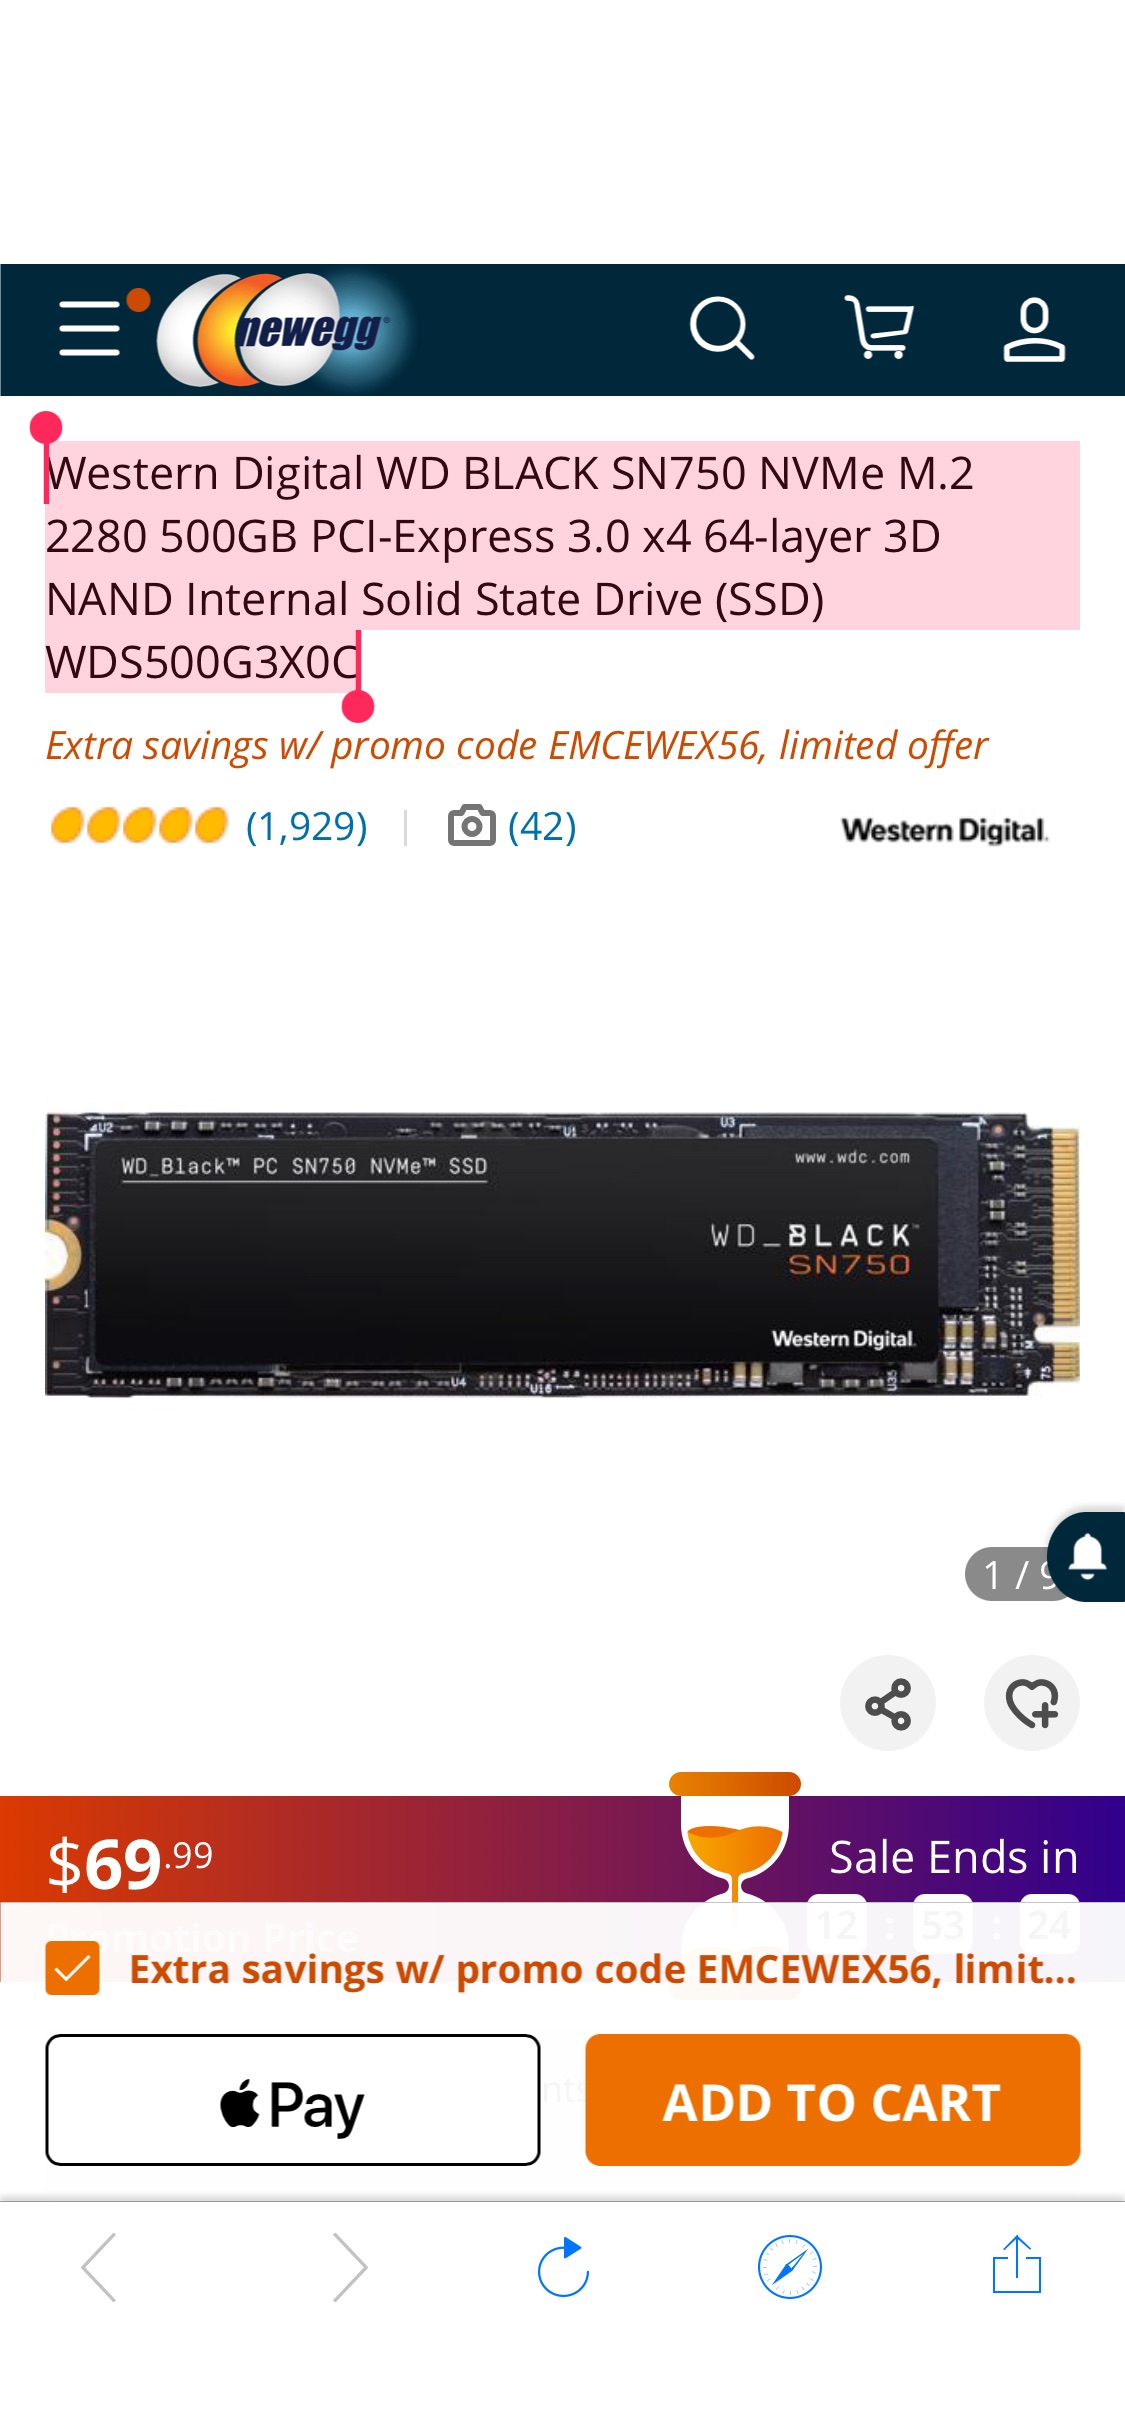 西数Western Digital WD BLACK SN750 M.2 2280 500GB SSD - Newegg.com